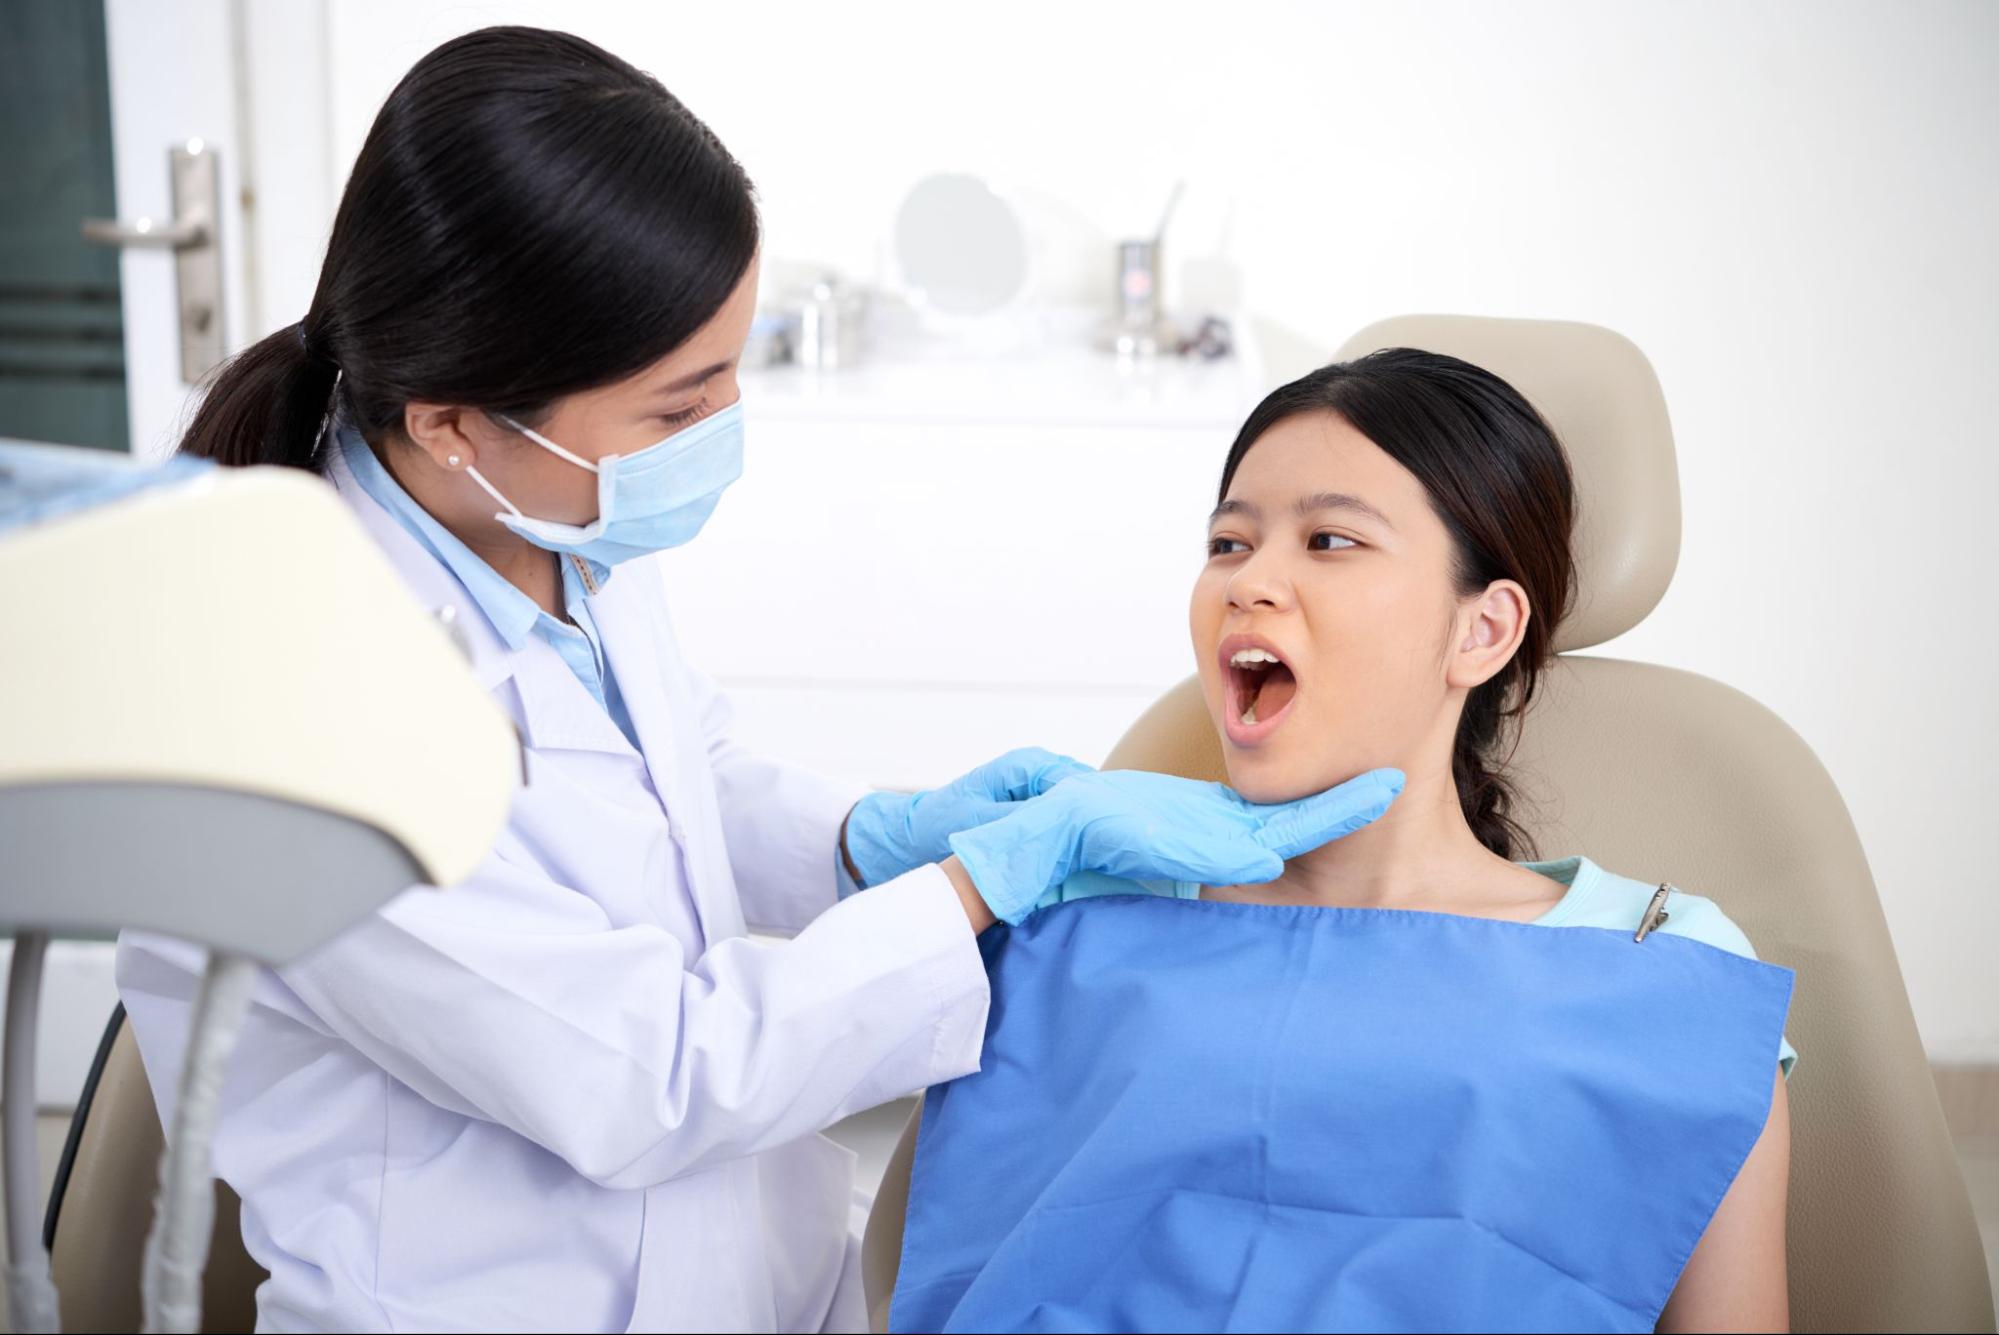 如果有牙齒擁擠問題，建議儘快找牙醫進行檢查和治療